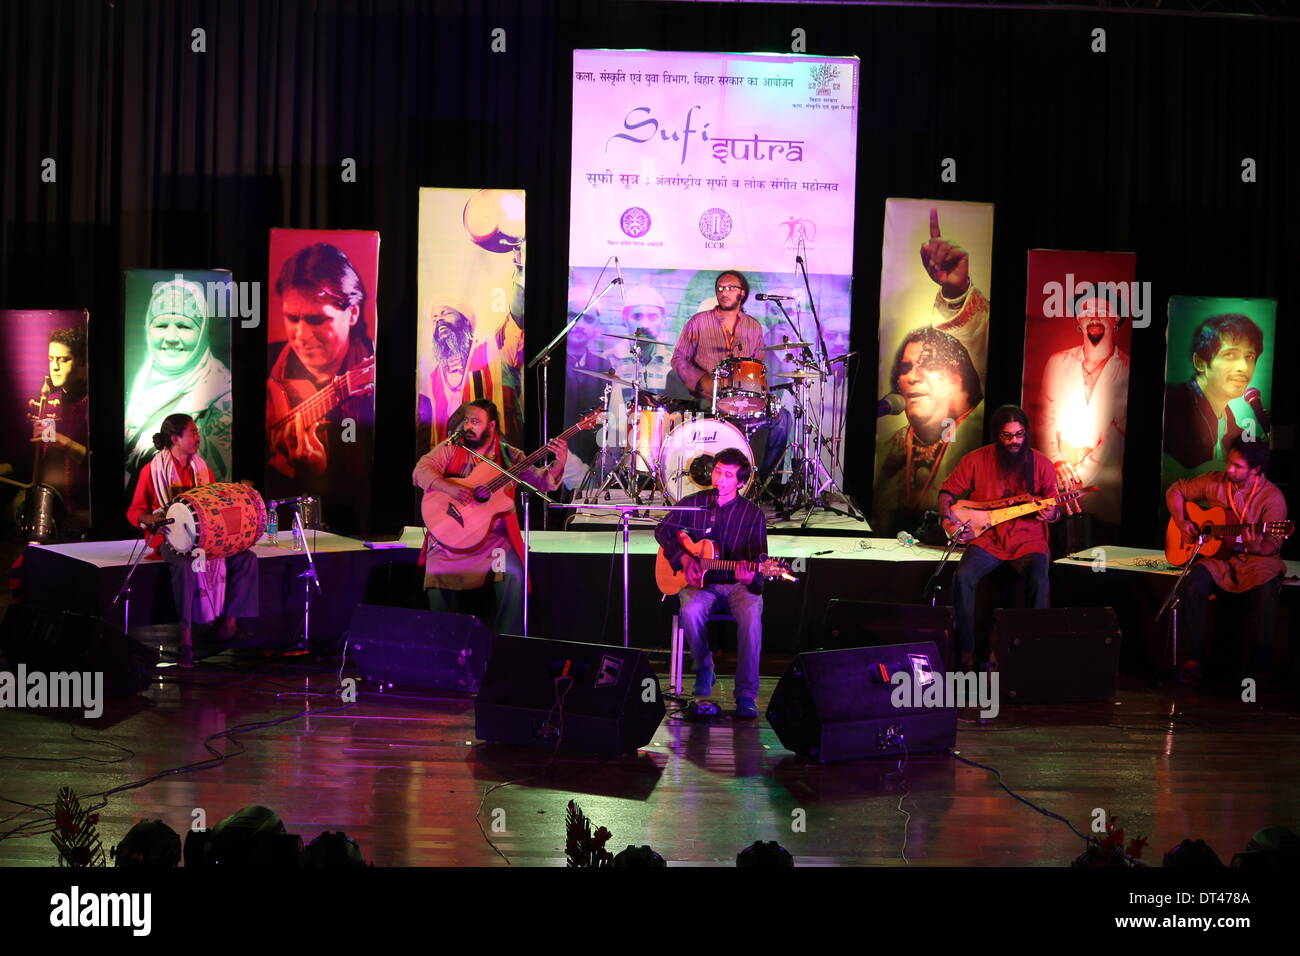 De Premchand, Patna, Bihar, Inde, 08 février 2014. Arnab et amis, Groupe international de Bangladesh joue chanson en bhojpuri langue de Bihar pendant Sutra Soufi festival le soir à la fin de l'hiver pour "la paix mondiale". Credit : Rupa Ghosh/Alamy Live News. Banque D'Images